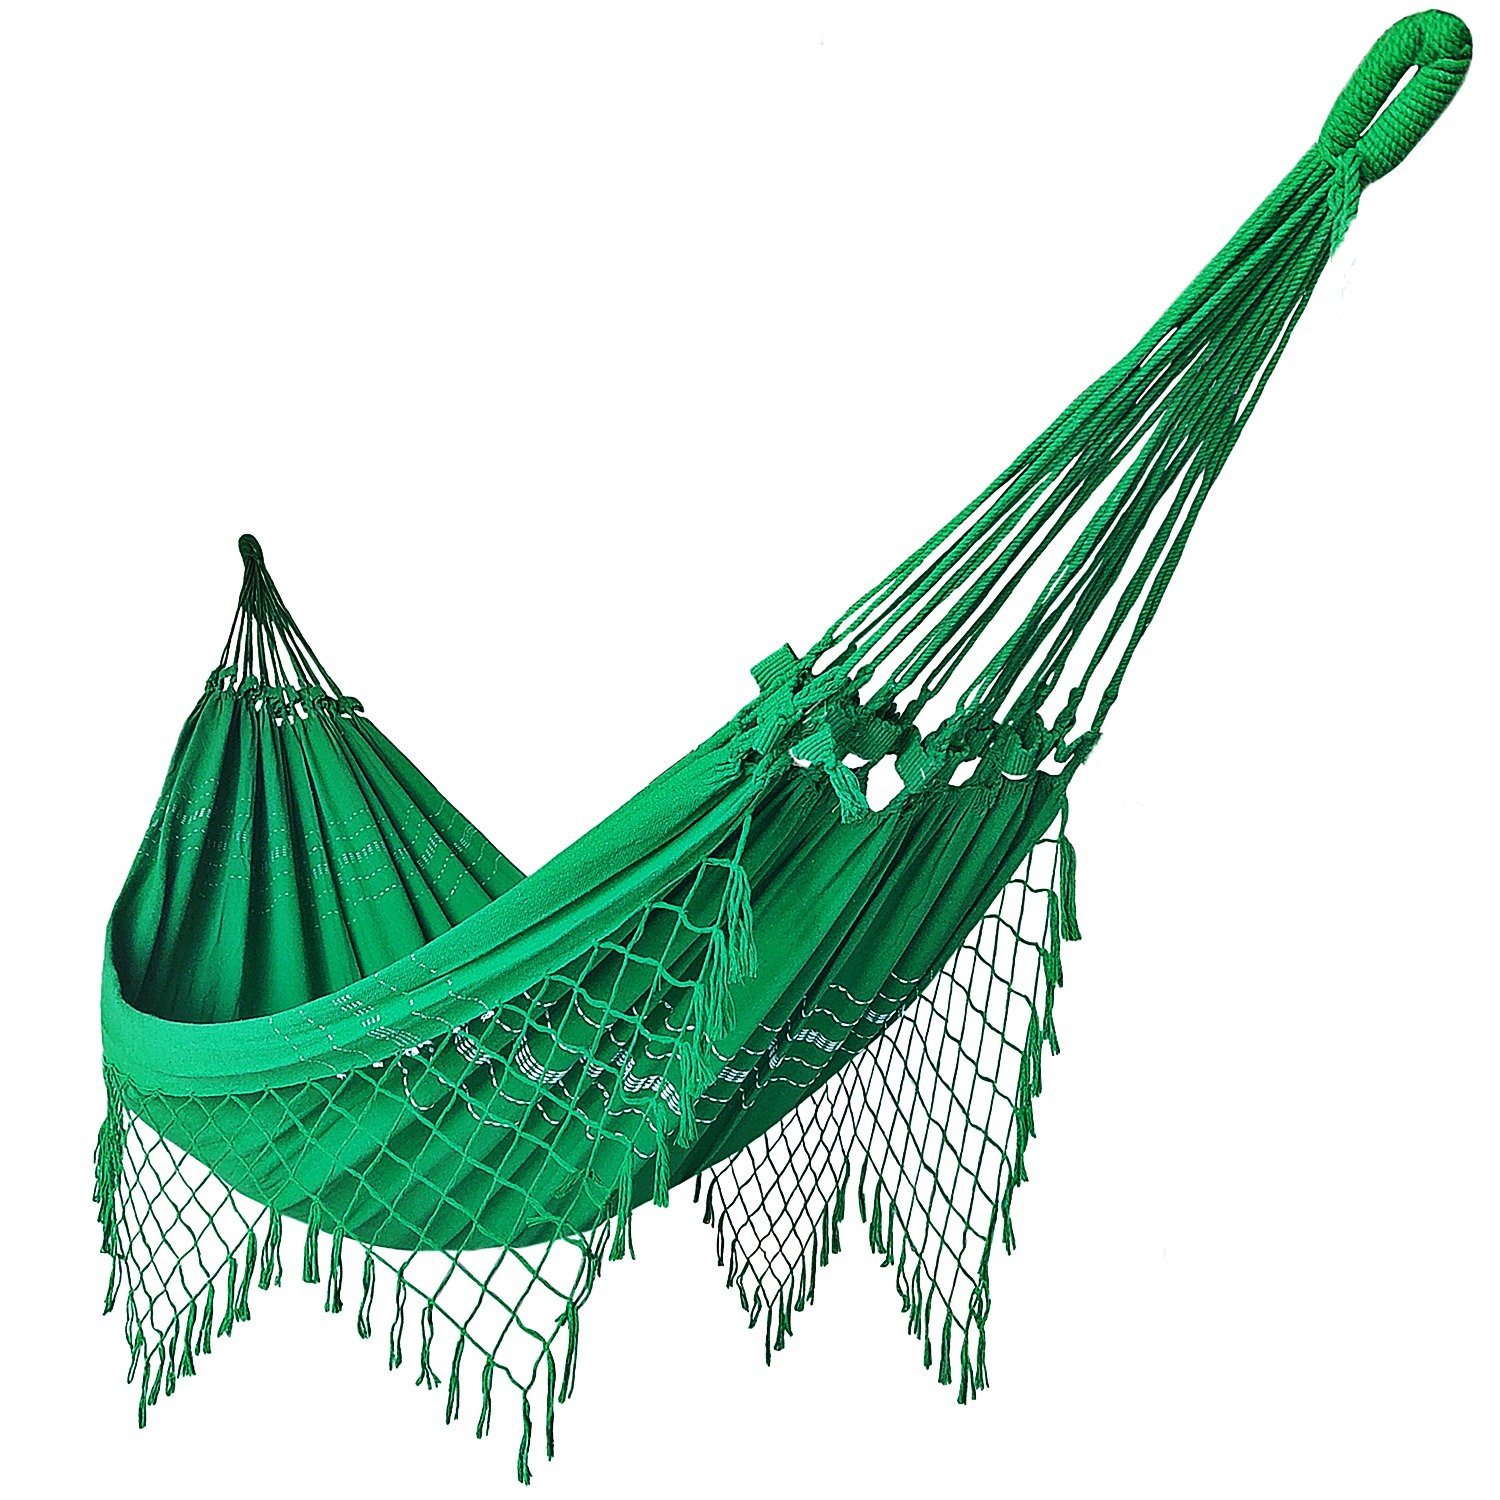 Rede de Dormir Casal Balanço de Algodão Reforçada 3,80m x 1,50m Varias Cores:Verde bandeira - 1